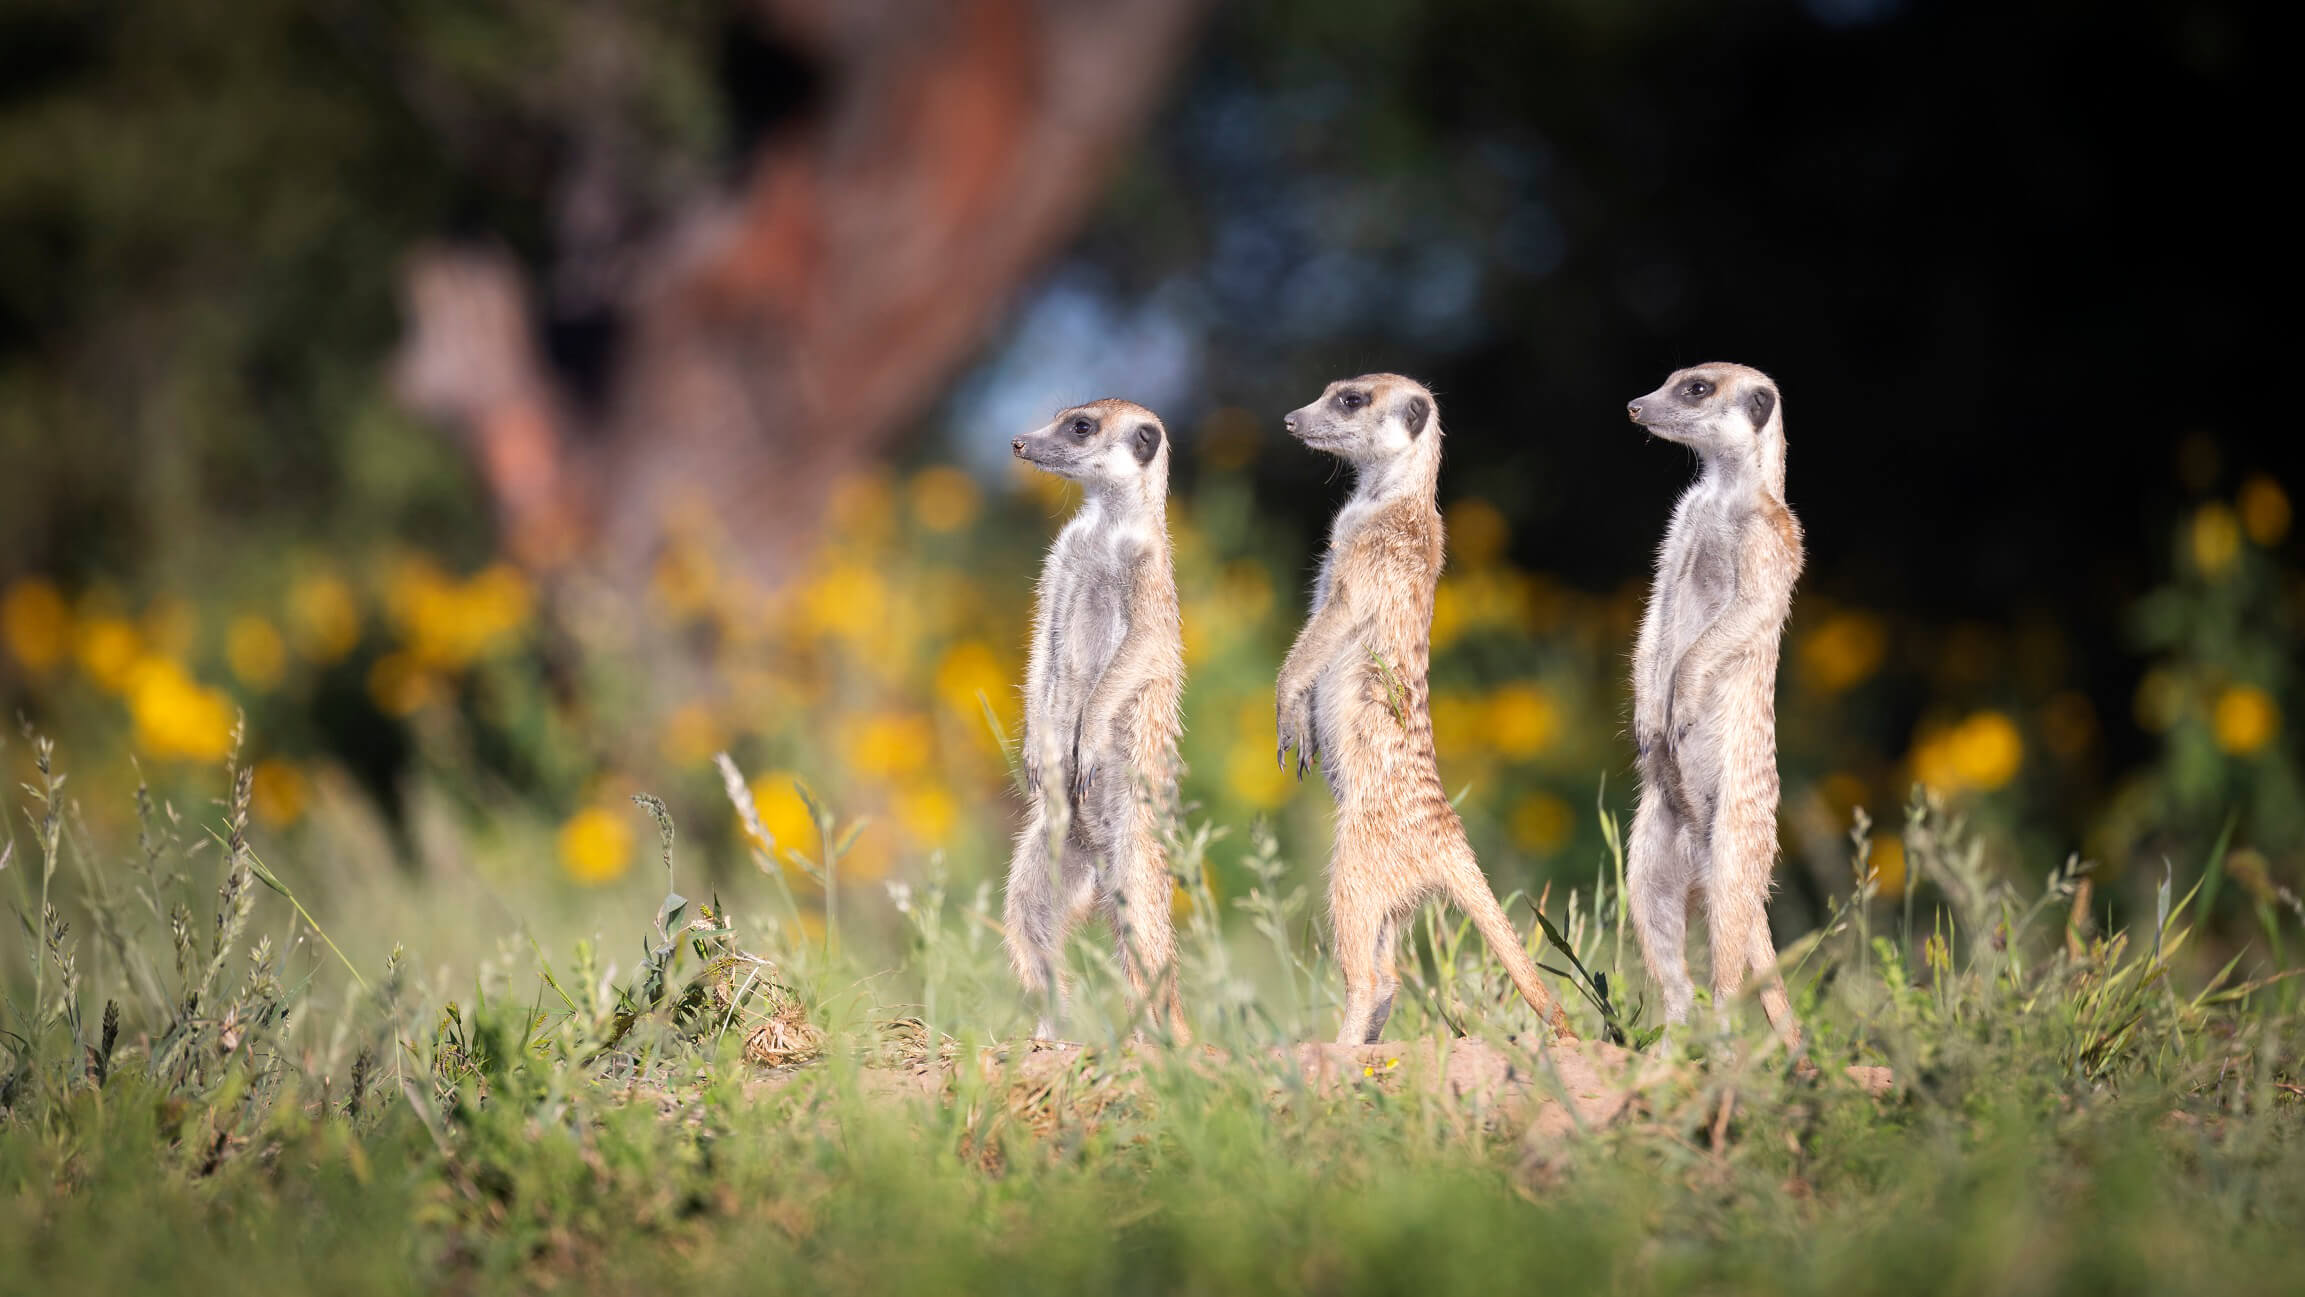 Kalahari meerkats